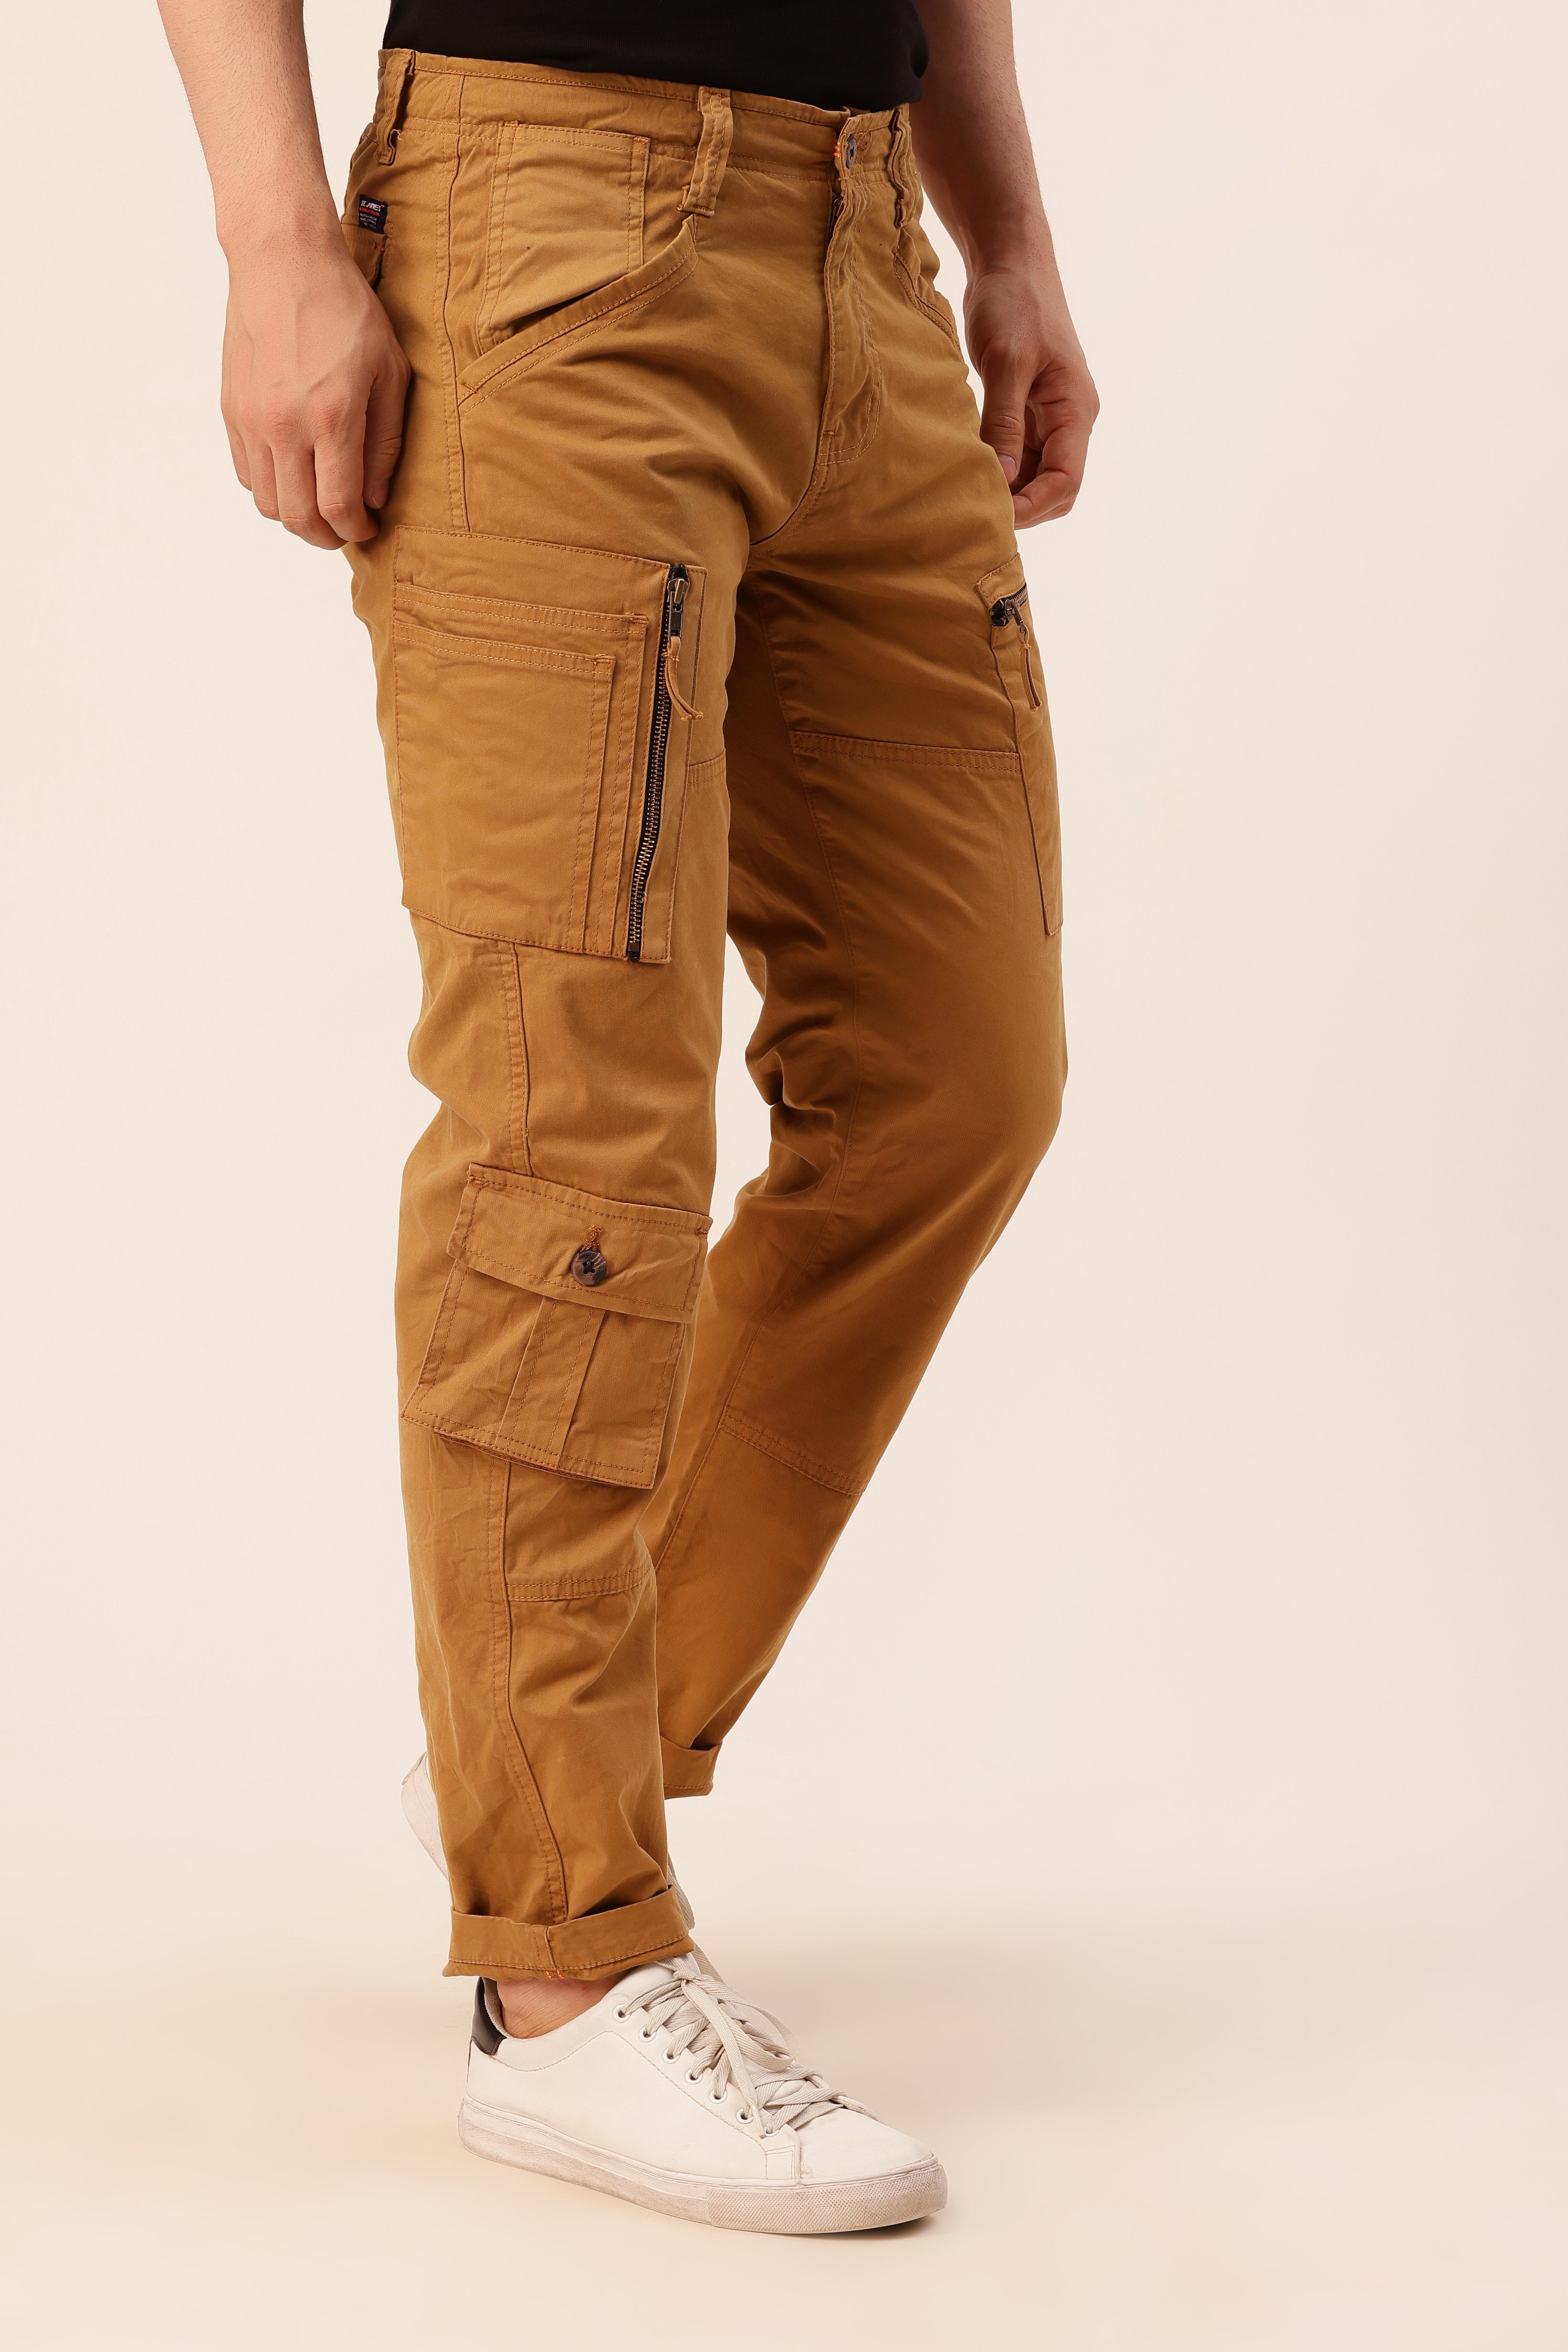 Buy Sustainable Lee Cooper Slim Fit Cargo Pants | Splash Bahrain